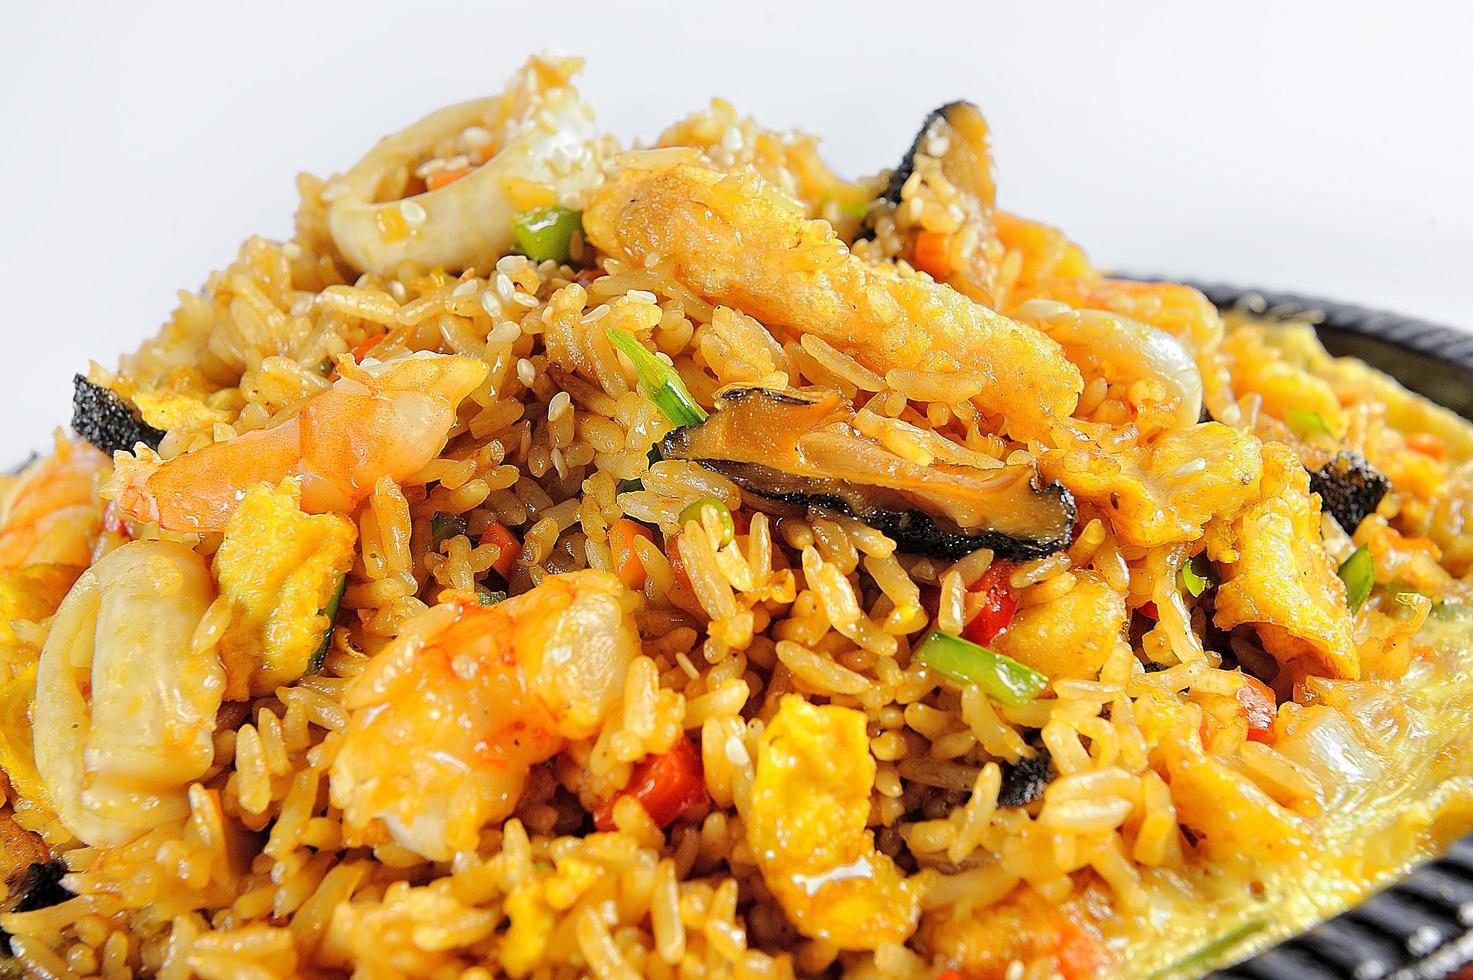 comida peruana marisco y arroz llamado arroz con mariscos foto